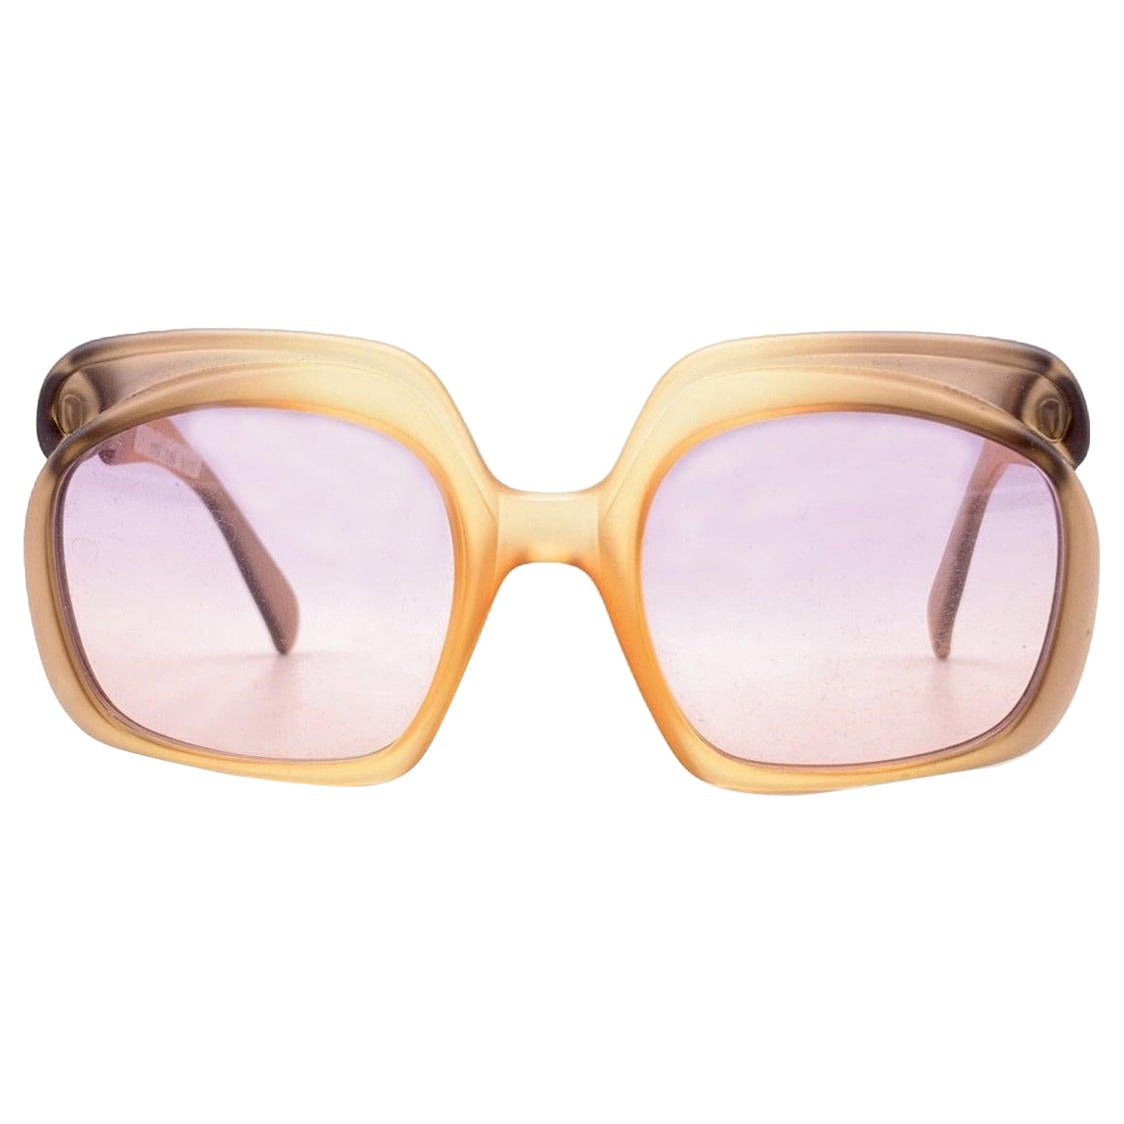 Christian Dior Vintage Sunglasses 2009 368 Light Pink Lens 52/22 135mm